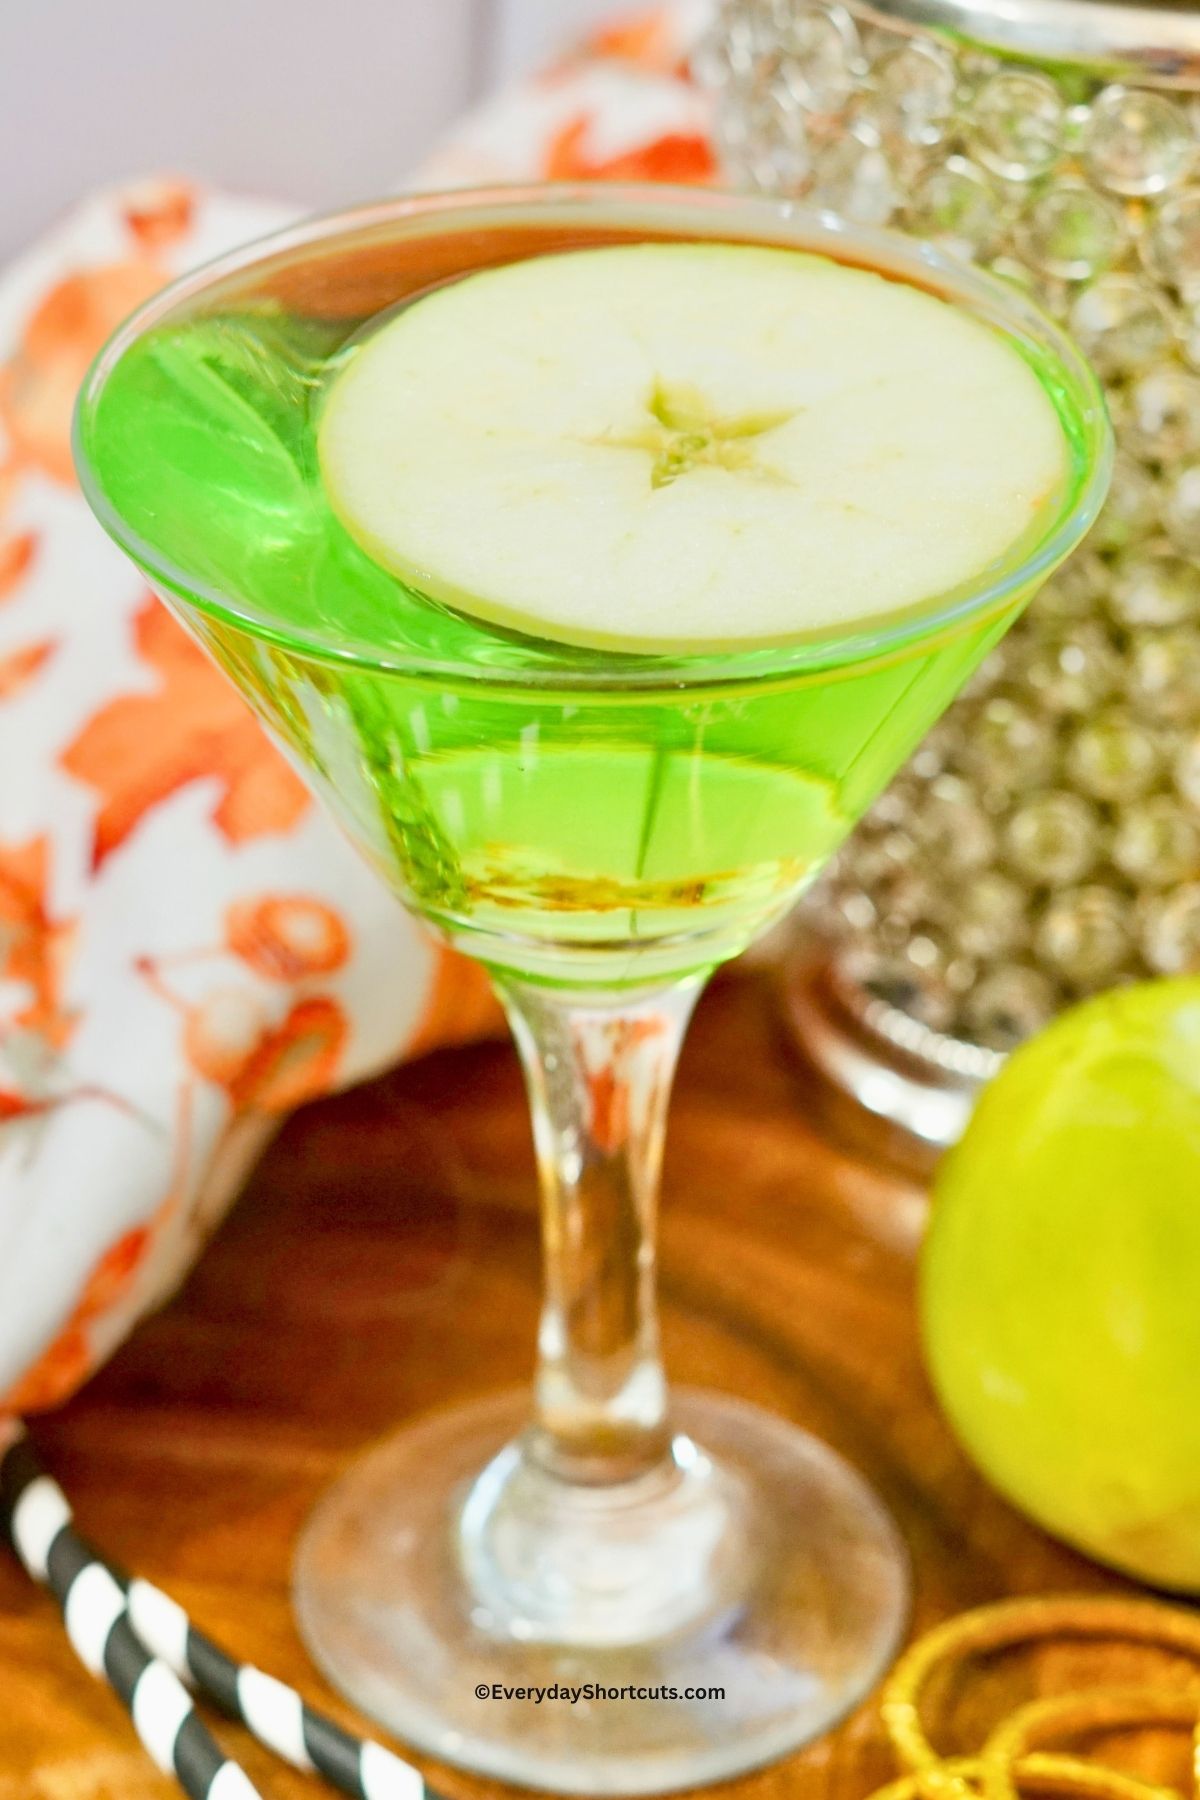 sour apple martini in a martini glass